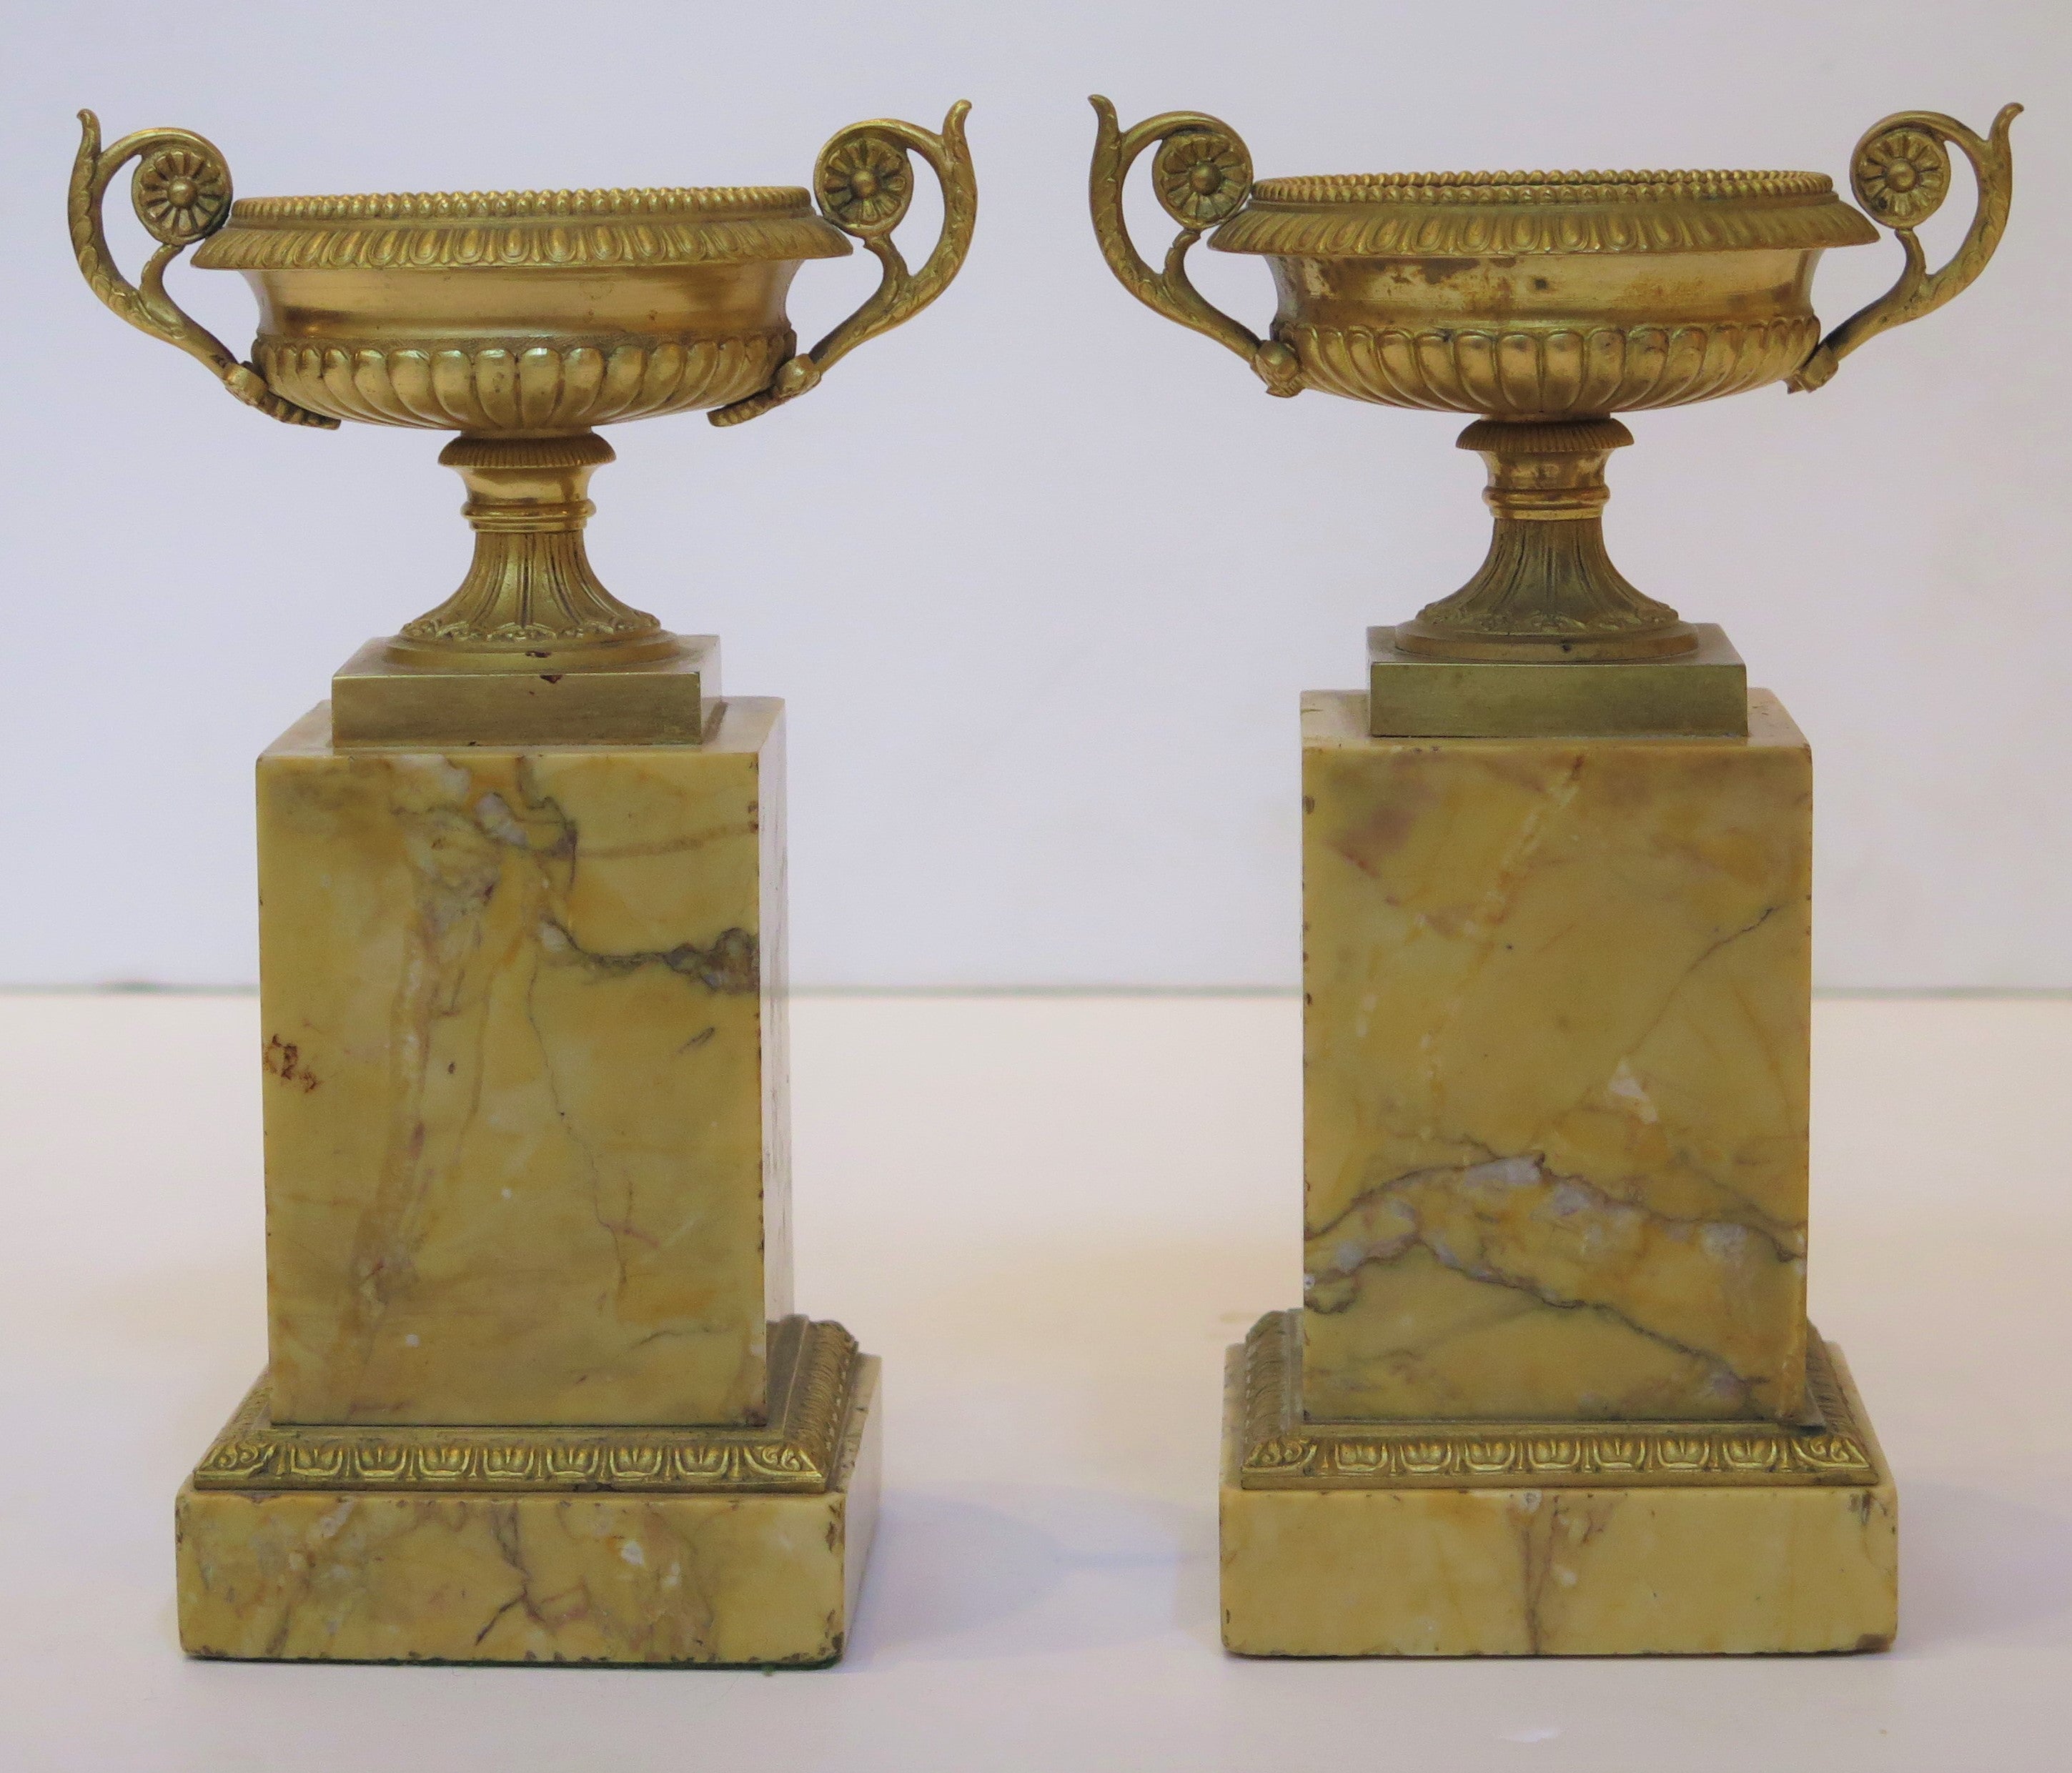 Grand Tour Souvenir Gilt Bronze Tazzas on Sienna Marble Bases